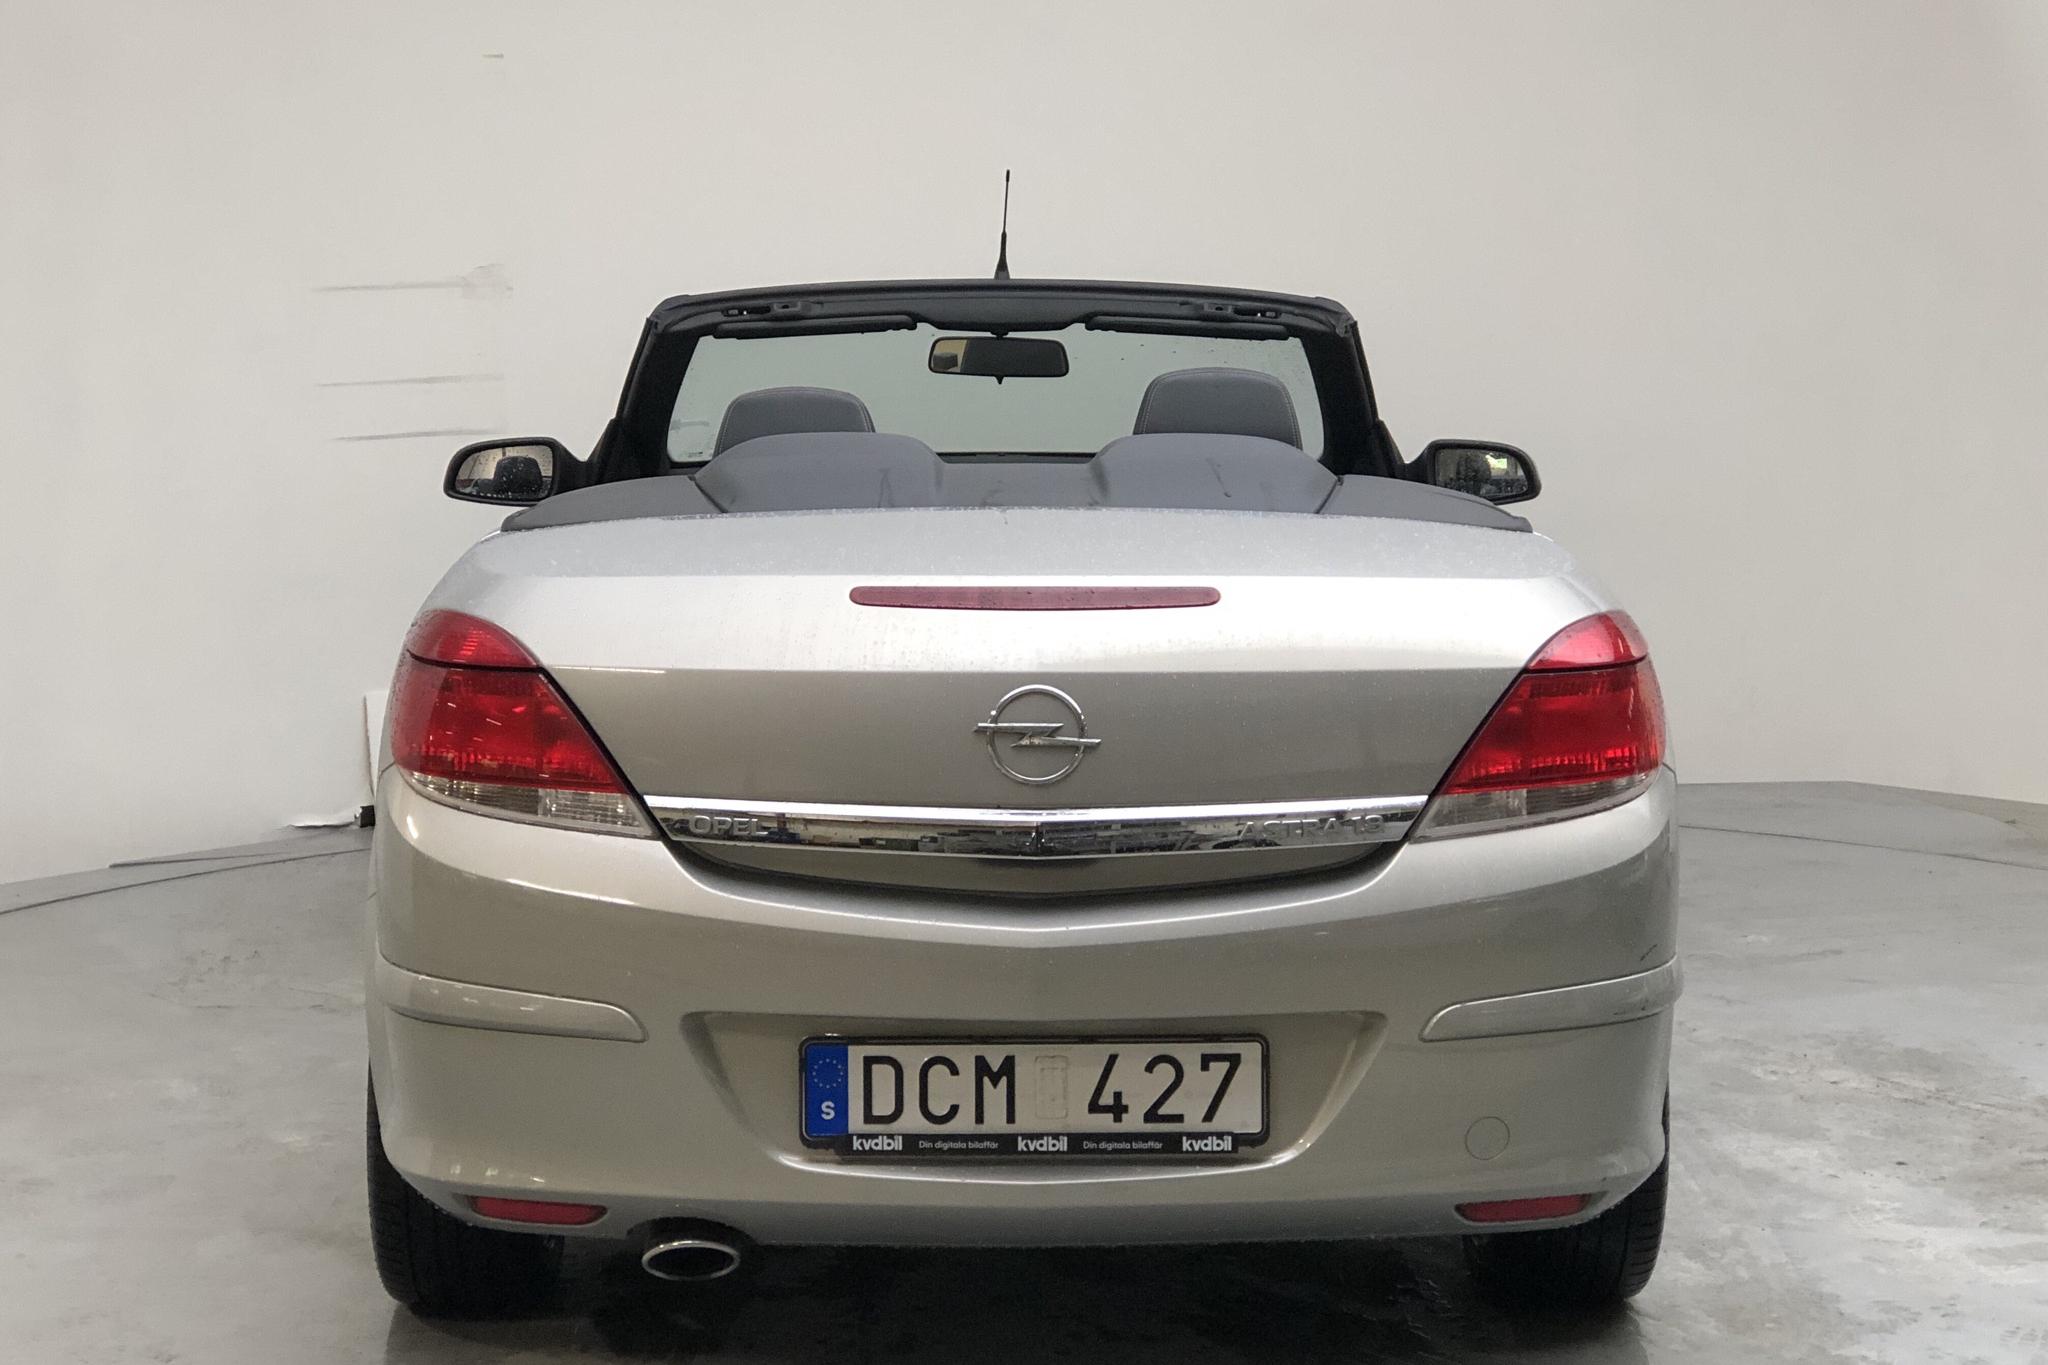 Opel Astra 1.8 TwinTop (140hk) - 7 575 mil - Manuell - grå - 2007